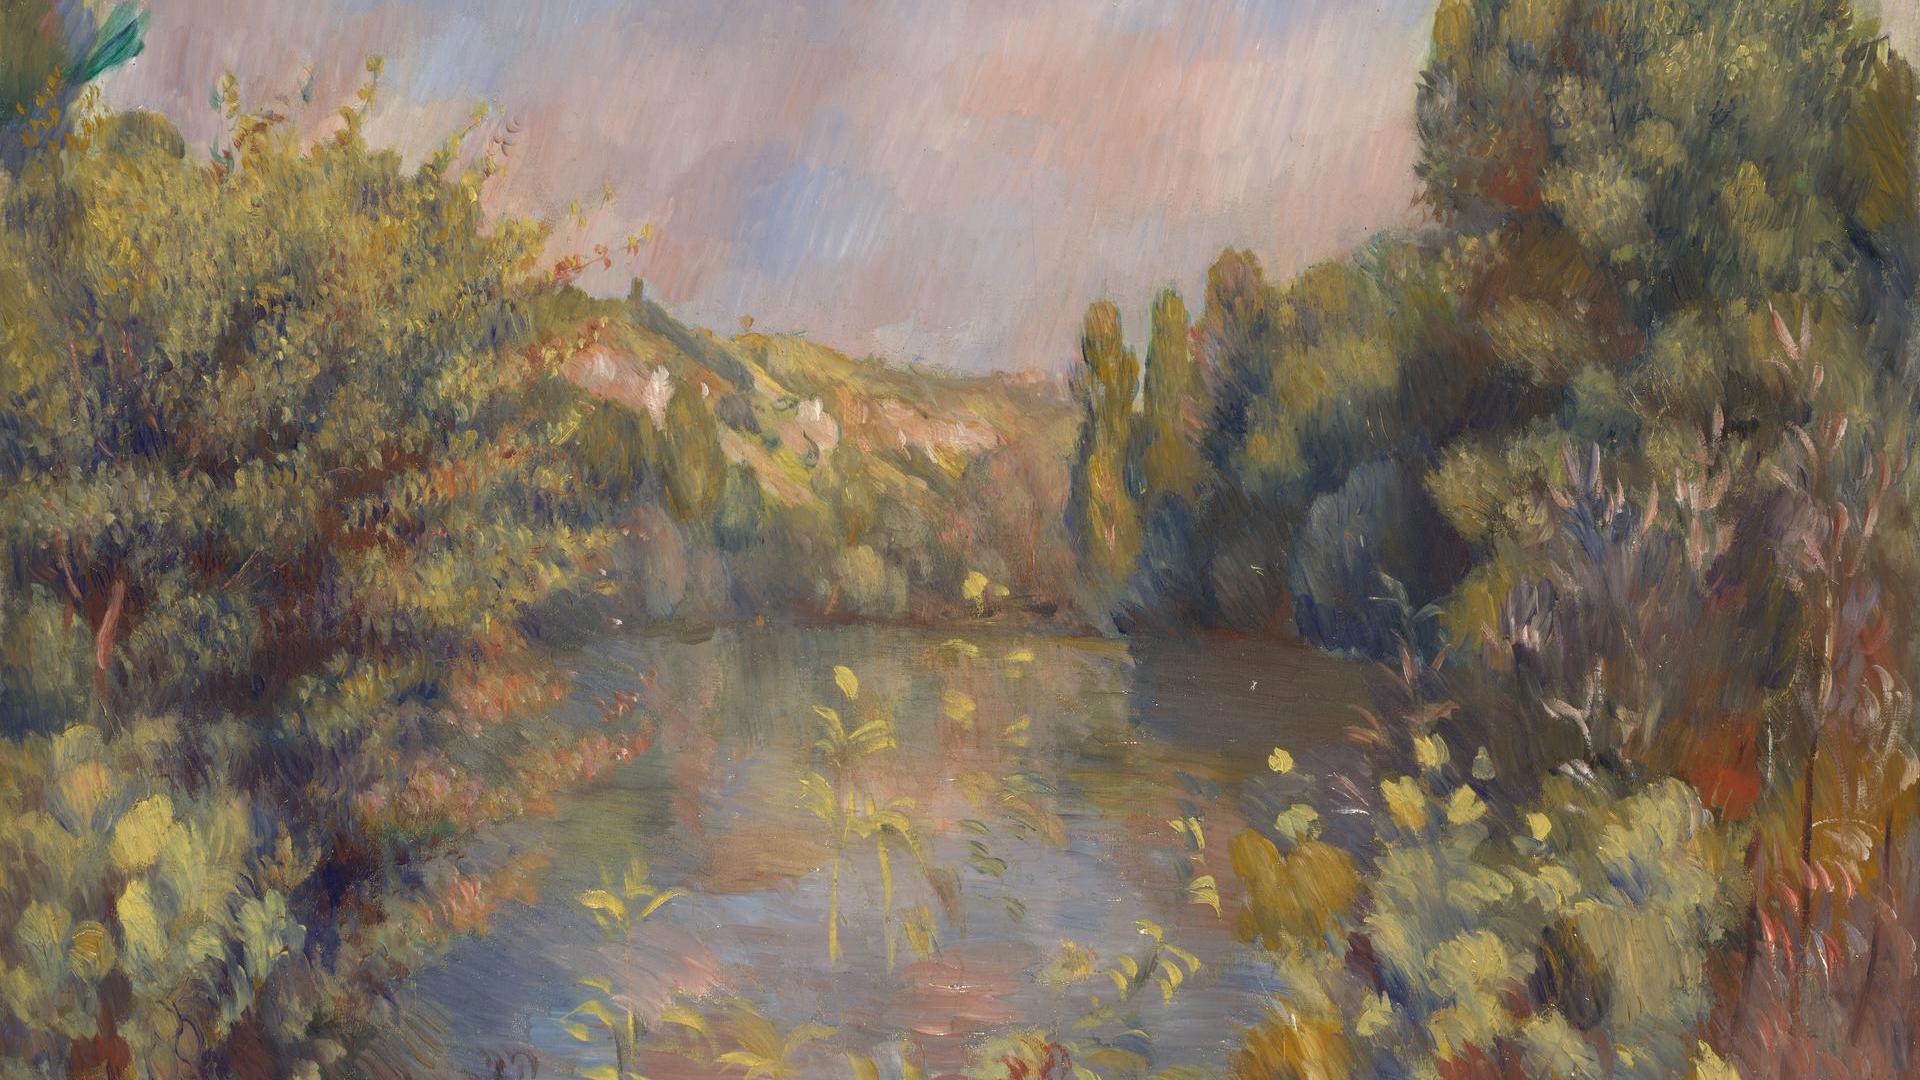 Lakeside Landscape by Pierre-Auguste Renoir